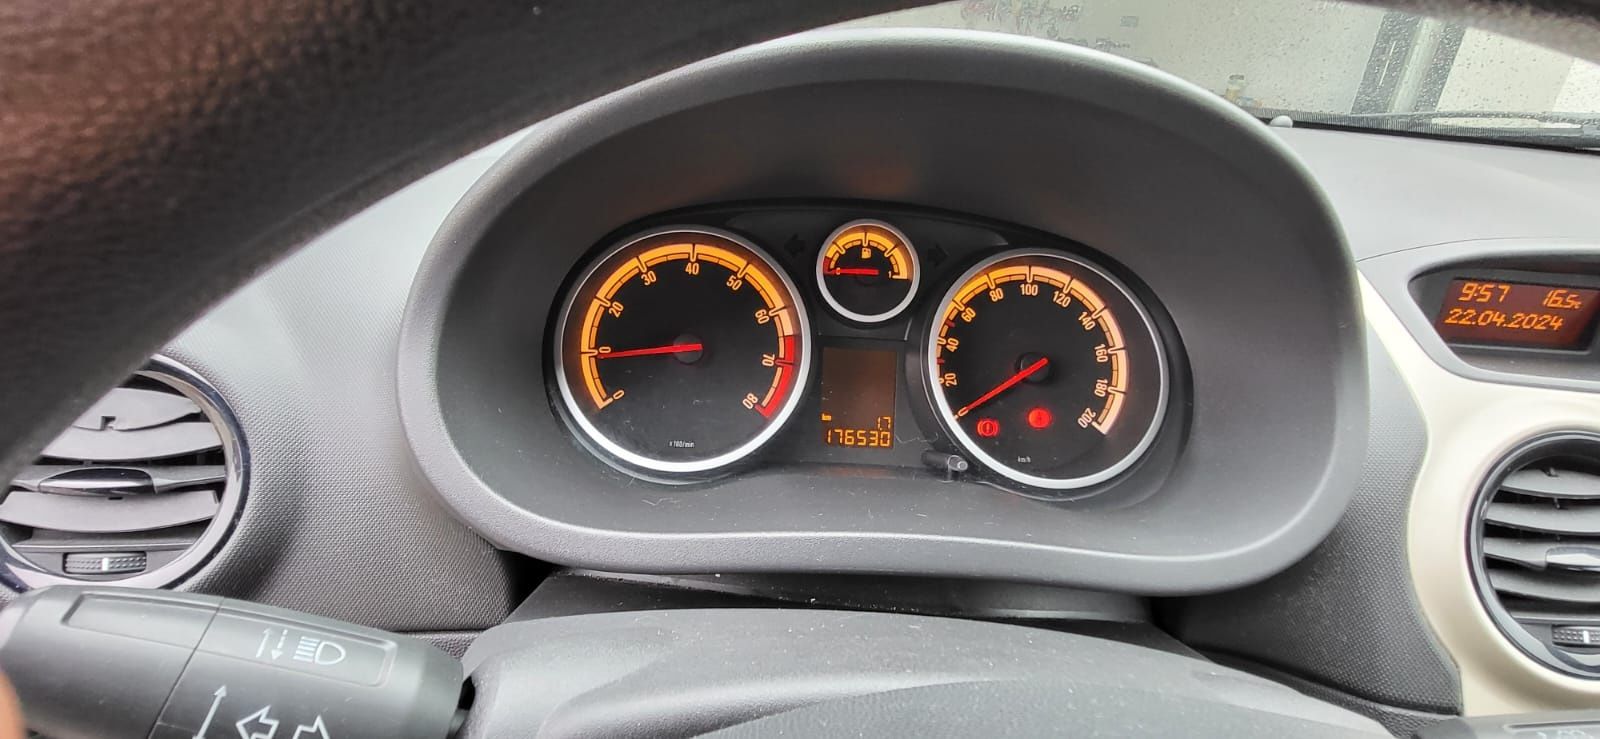 Opel corsa D 1,2 benzyna 2010r klimatyzacja